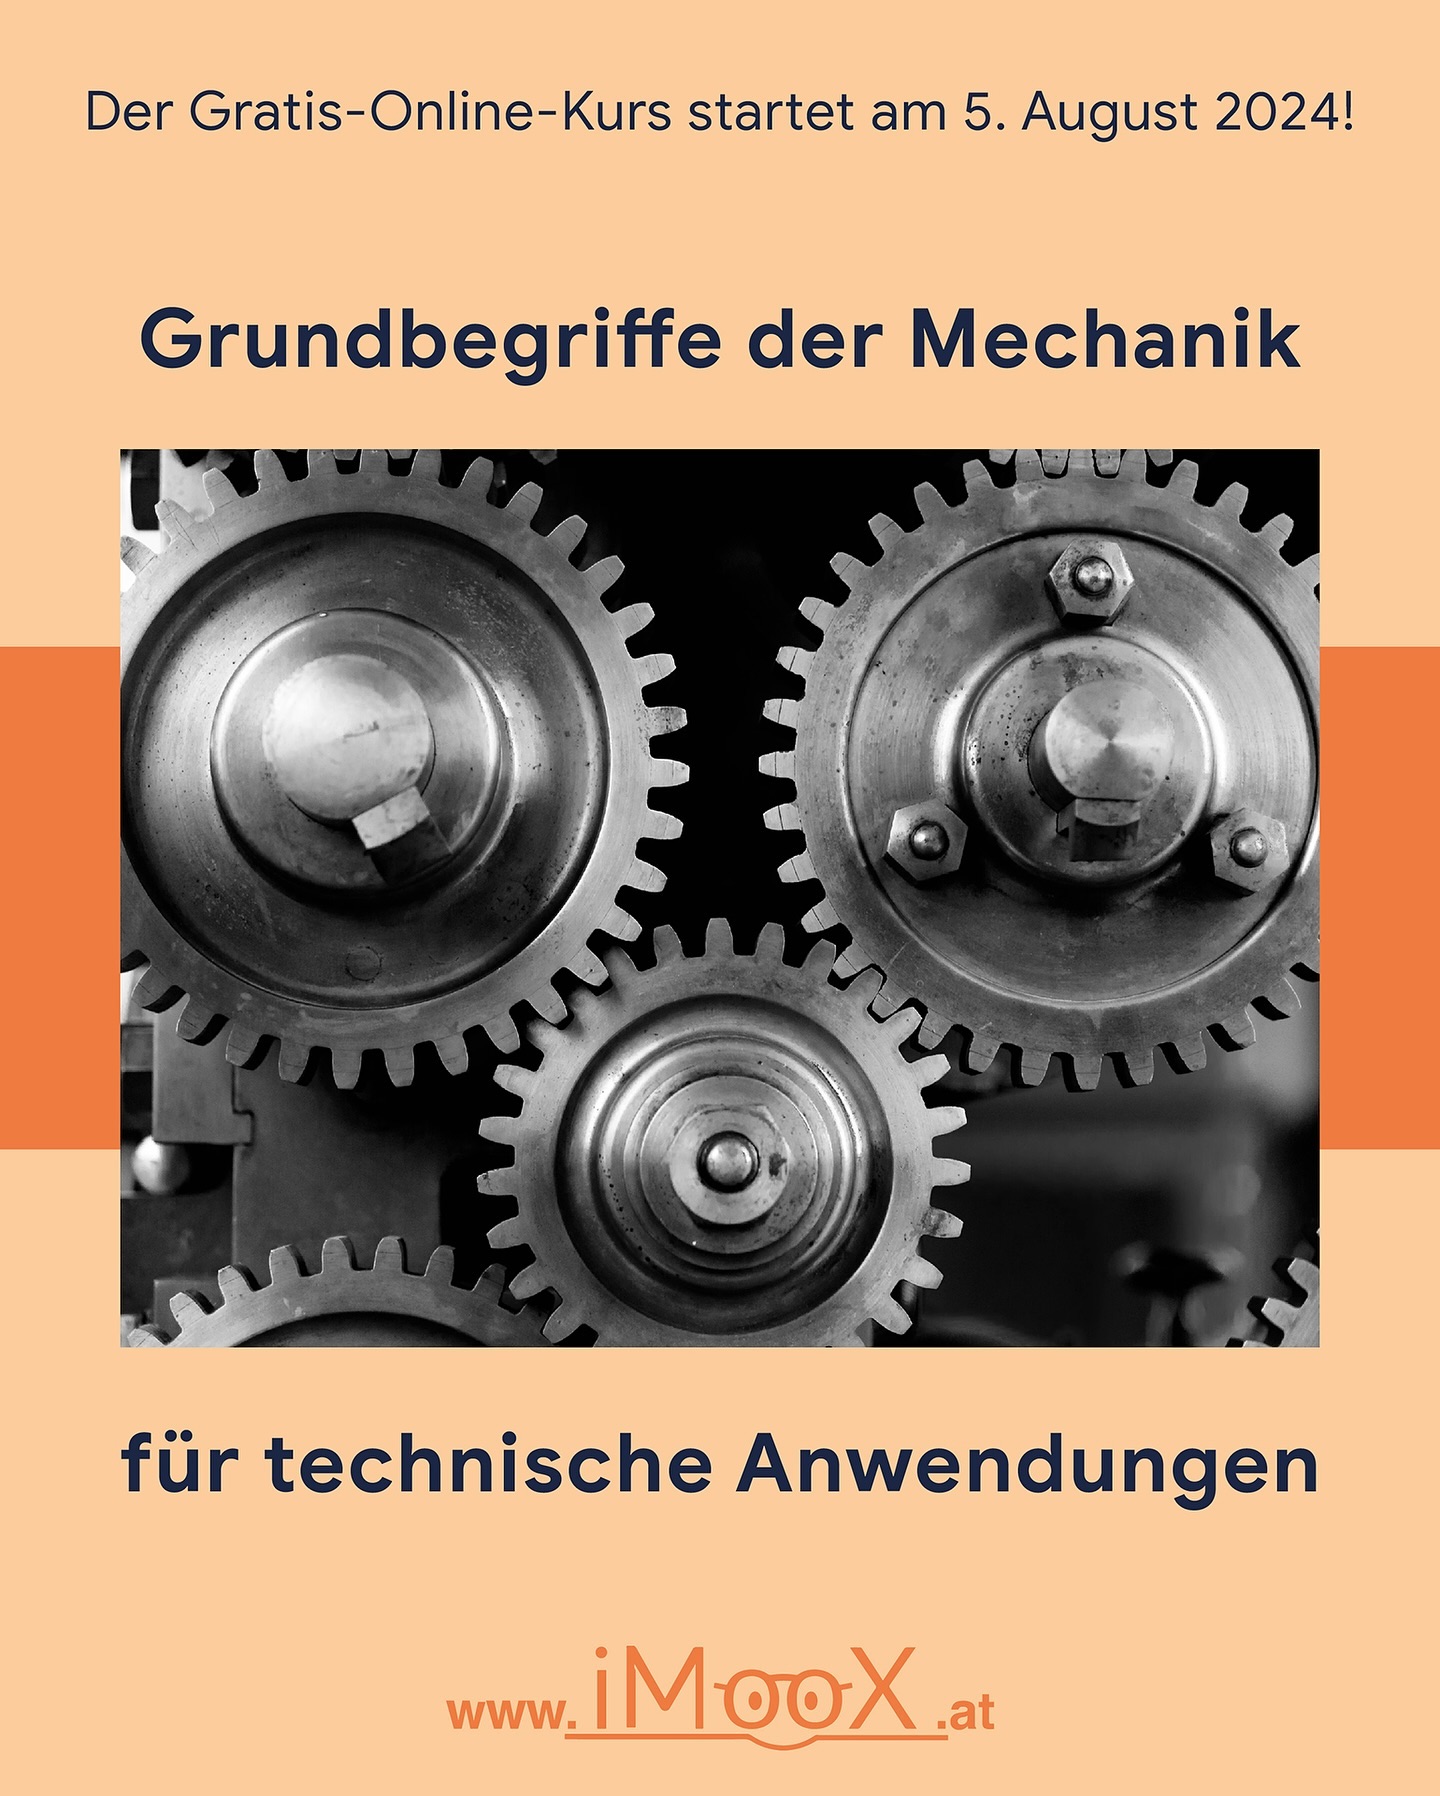 Das Fach „Mechanik“ bildet eine der zentralen Säulen ingenieurwissenschaftlicher Studien.

👉 Der ...